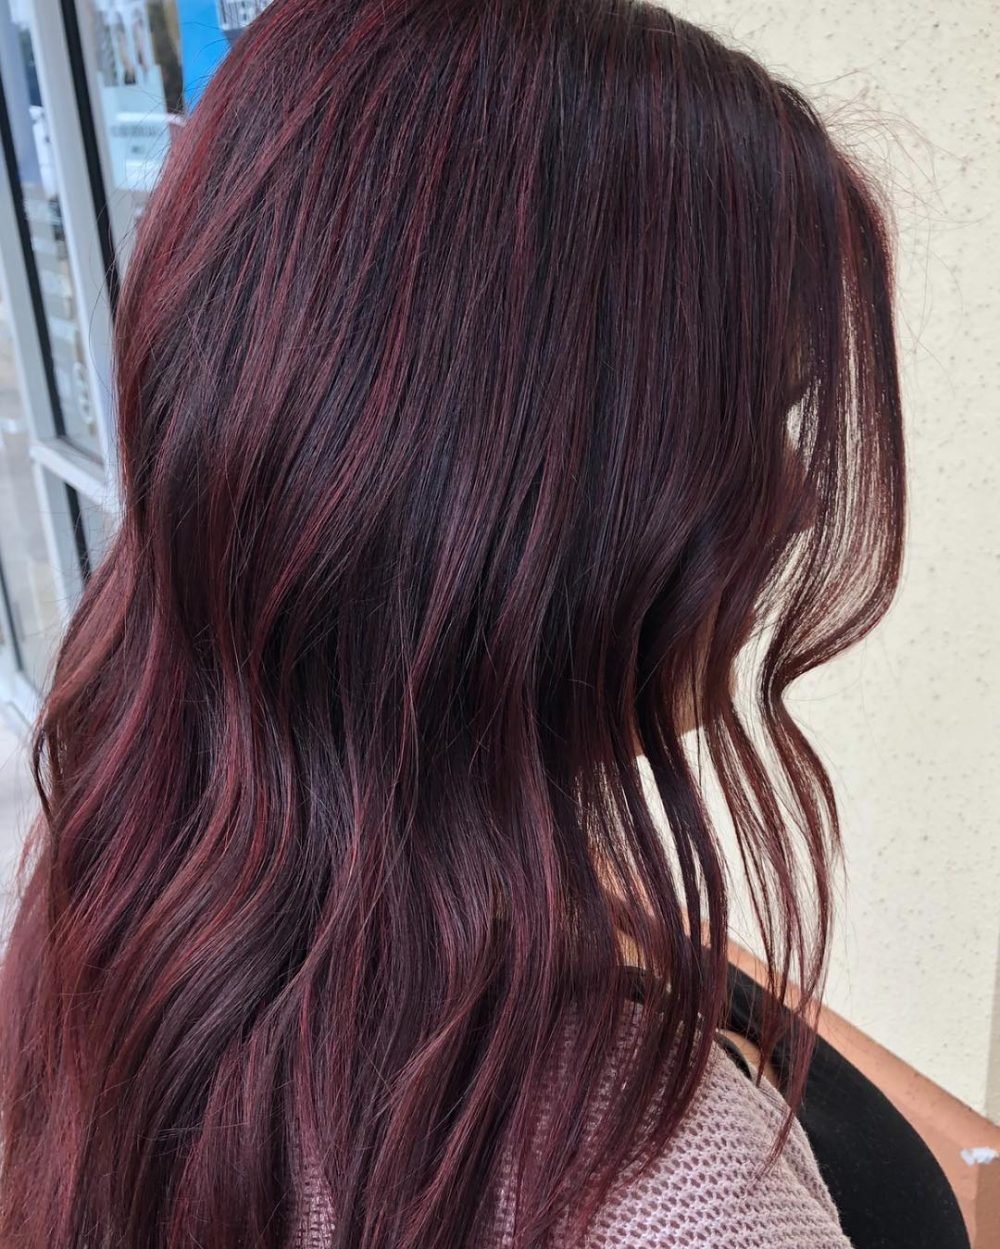 Stunning Highlighted Burgundy Red Hair